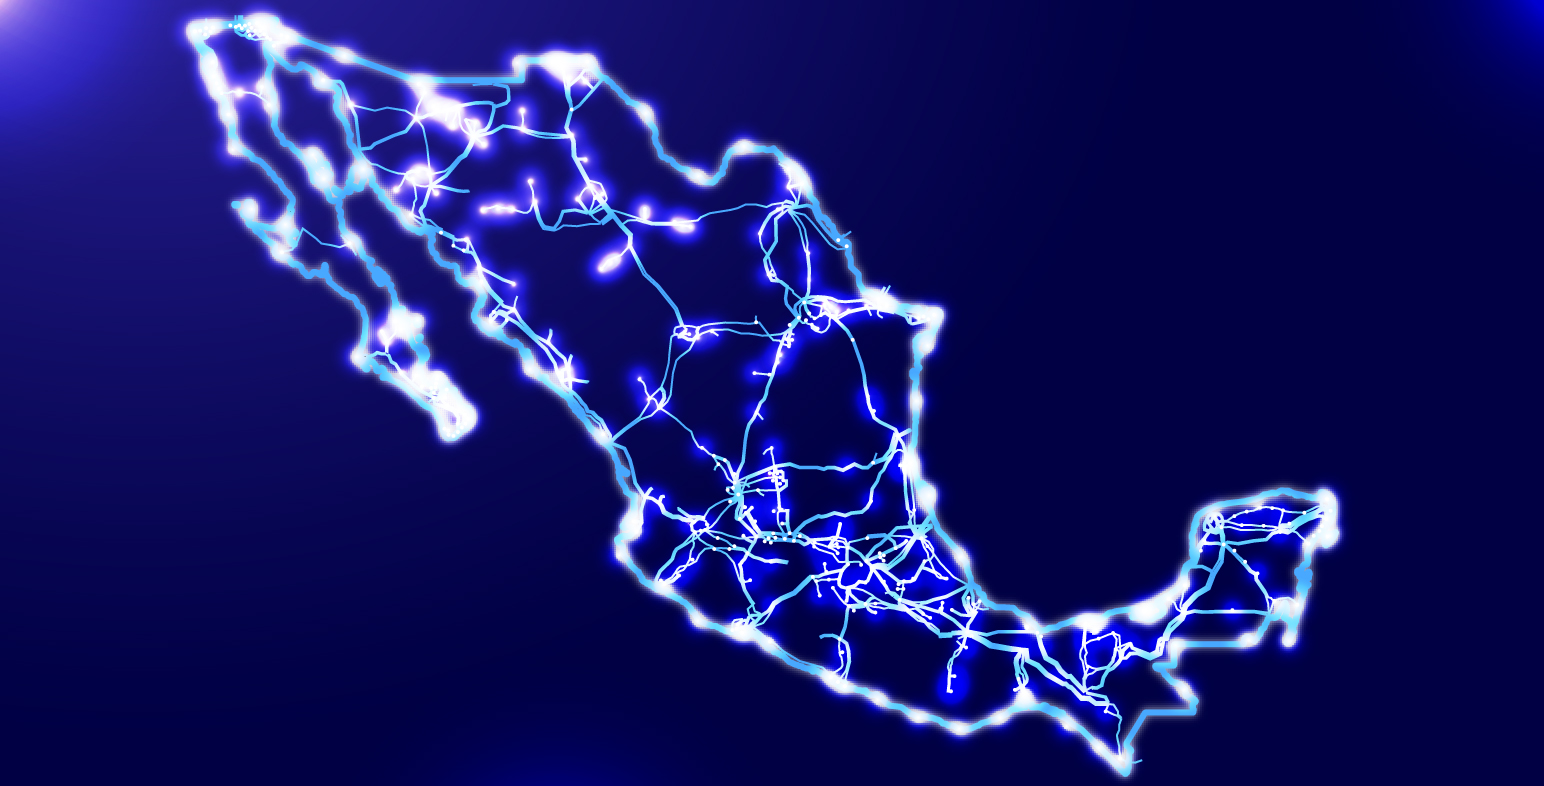 Confiabilidad vs. seguridad: ¿Cuál debe priorizarse en el sistema eléctrico de México?